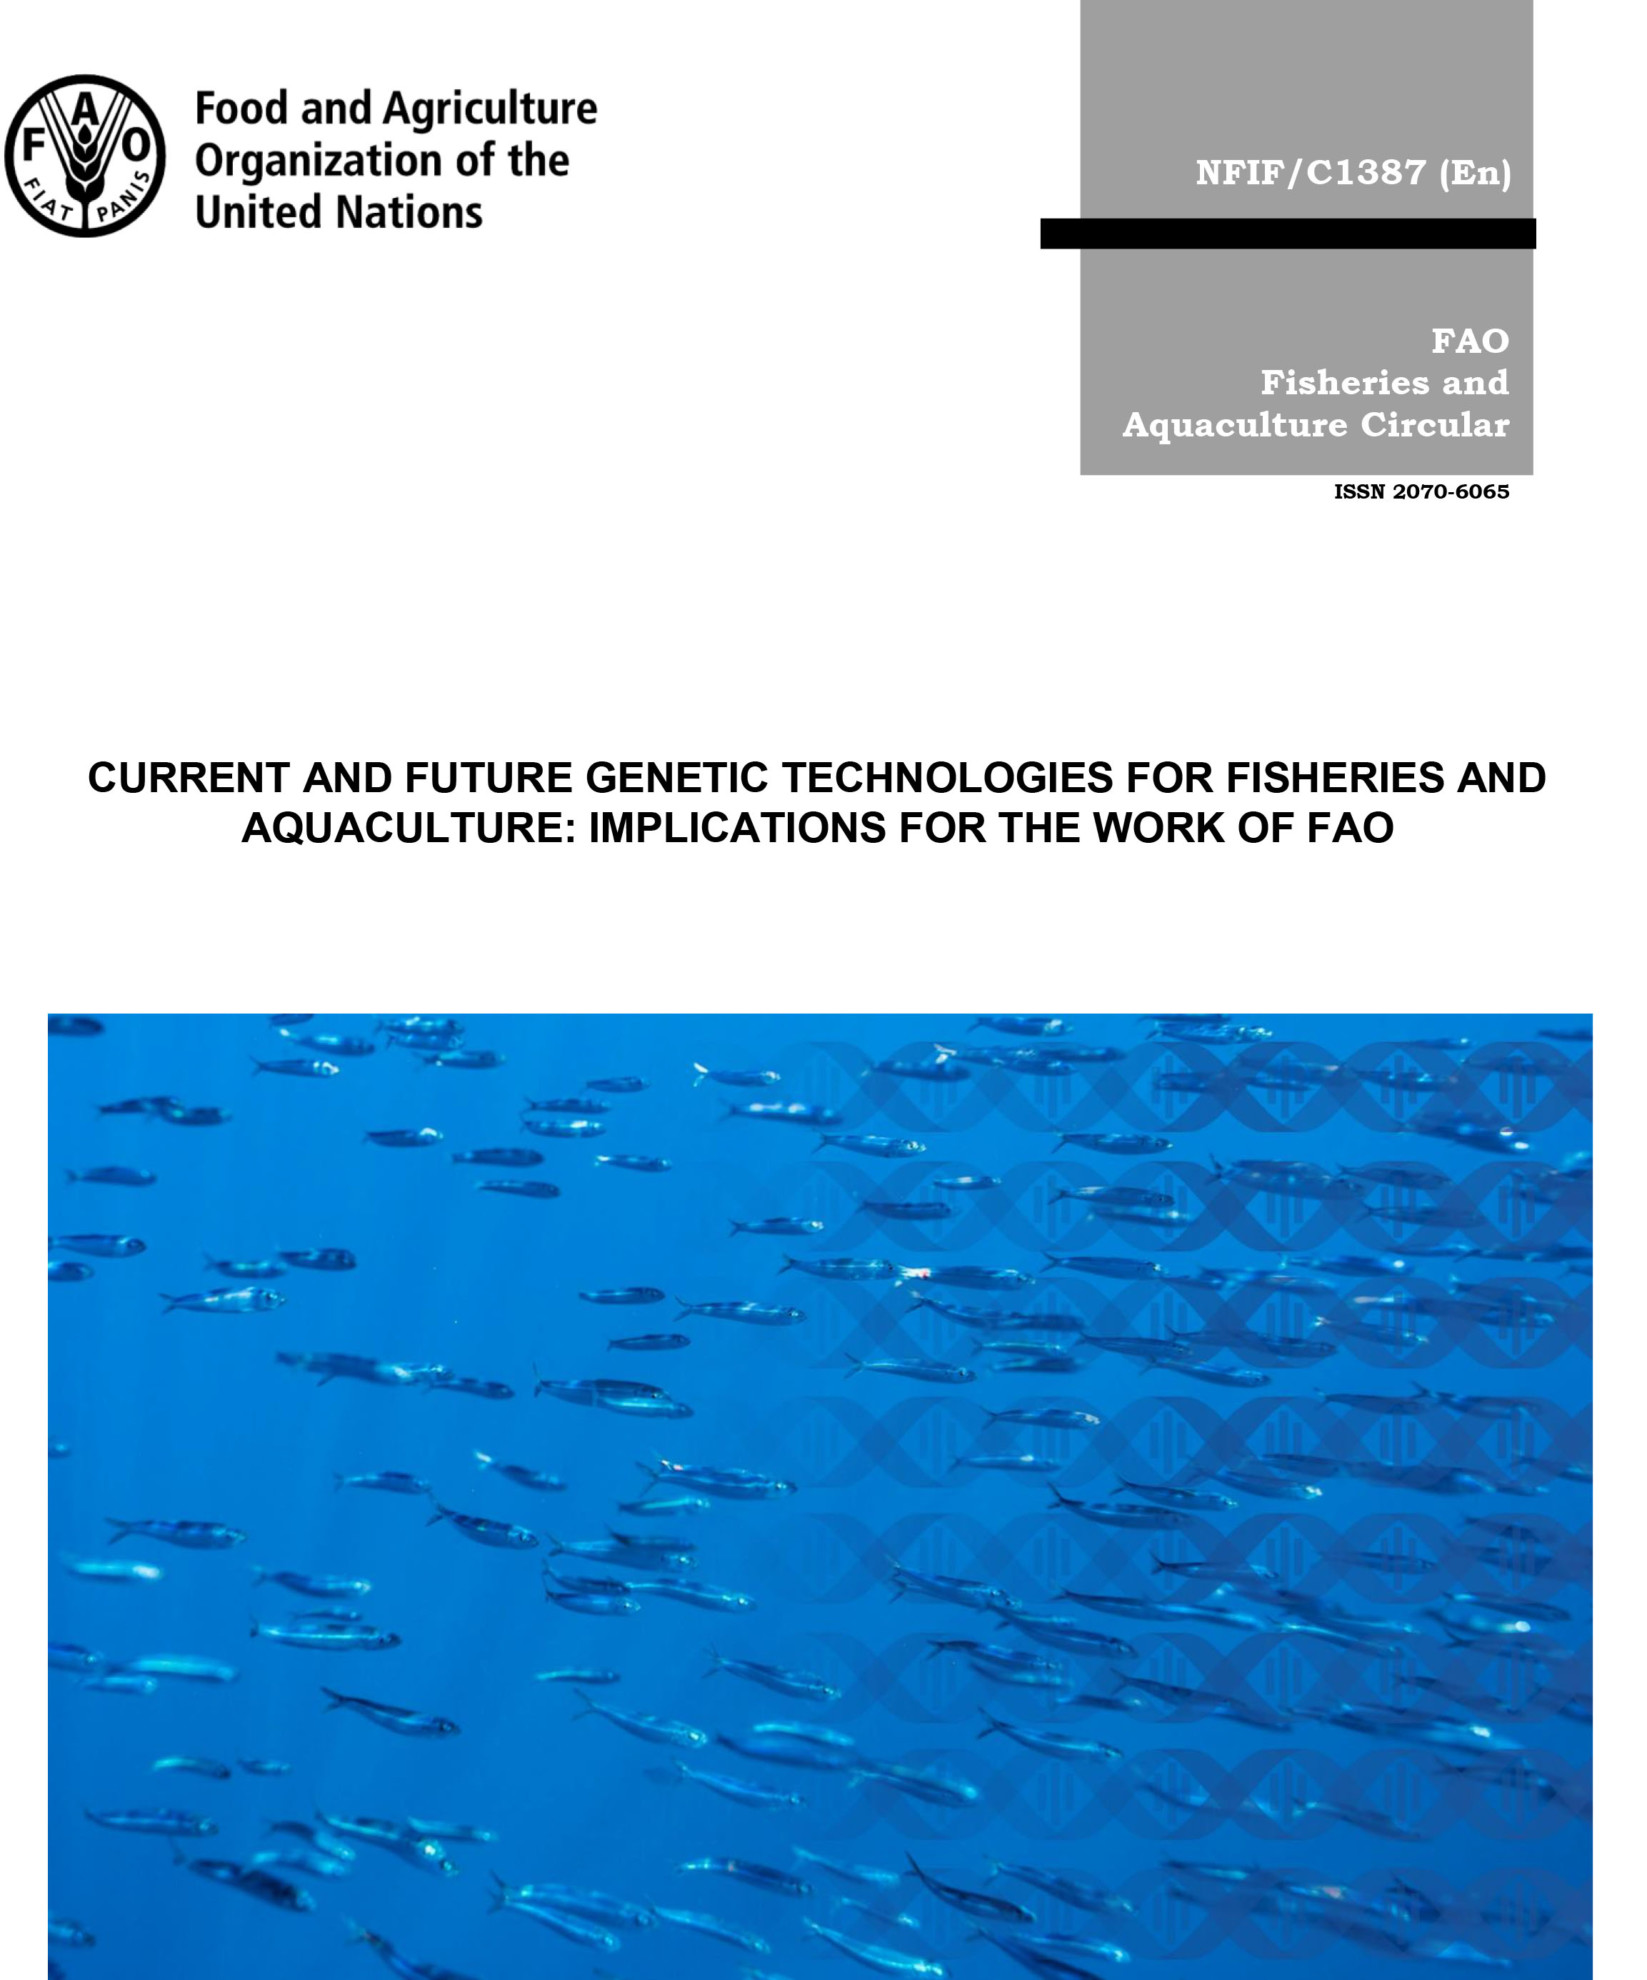 Estudio aborda las implicancias de las tecnologías genéticas para la pesca y la acuicultura